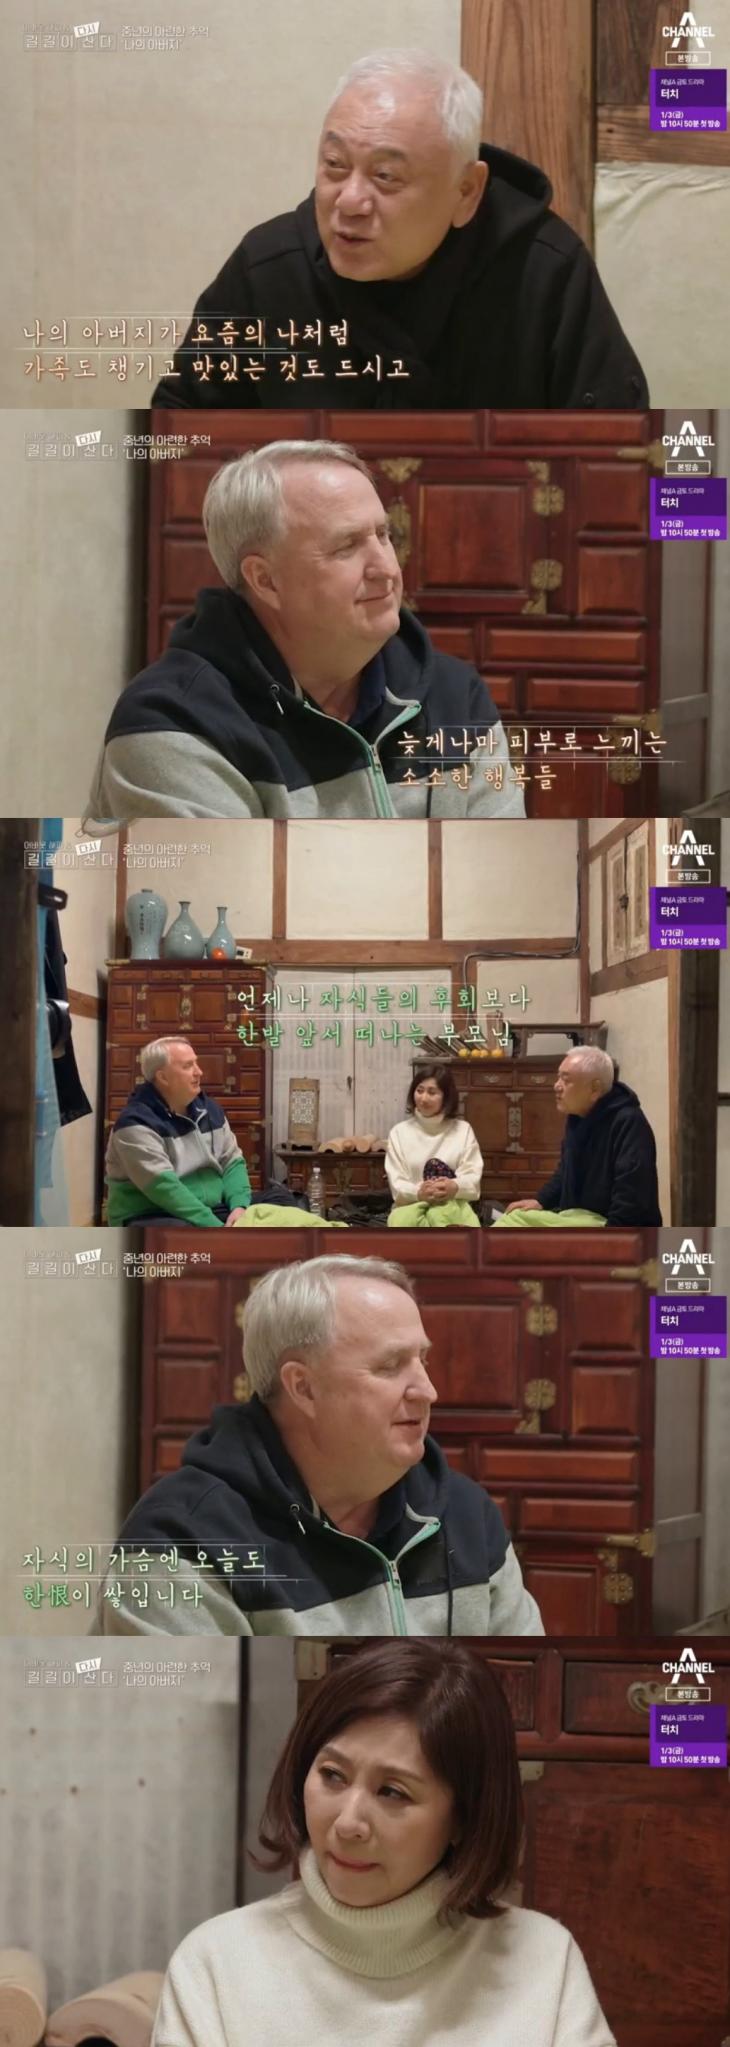 채널A 시사교양프로그램 '어바웃 해피&길길이 다시 산다'